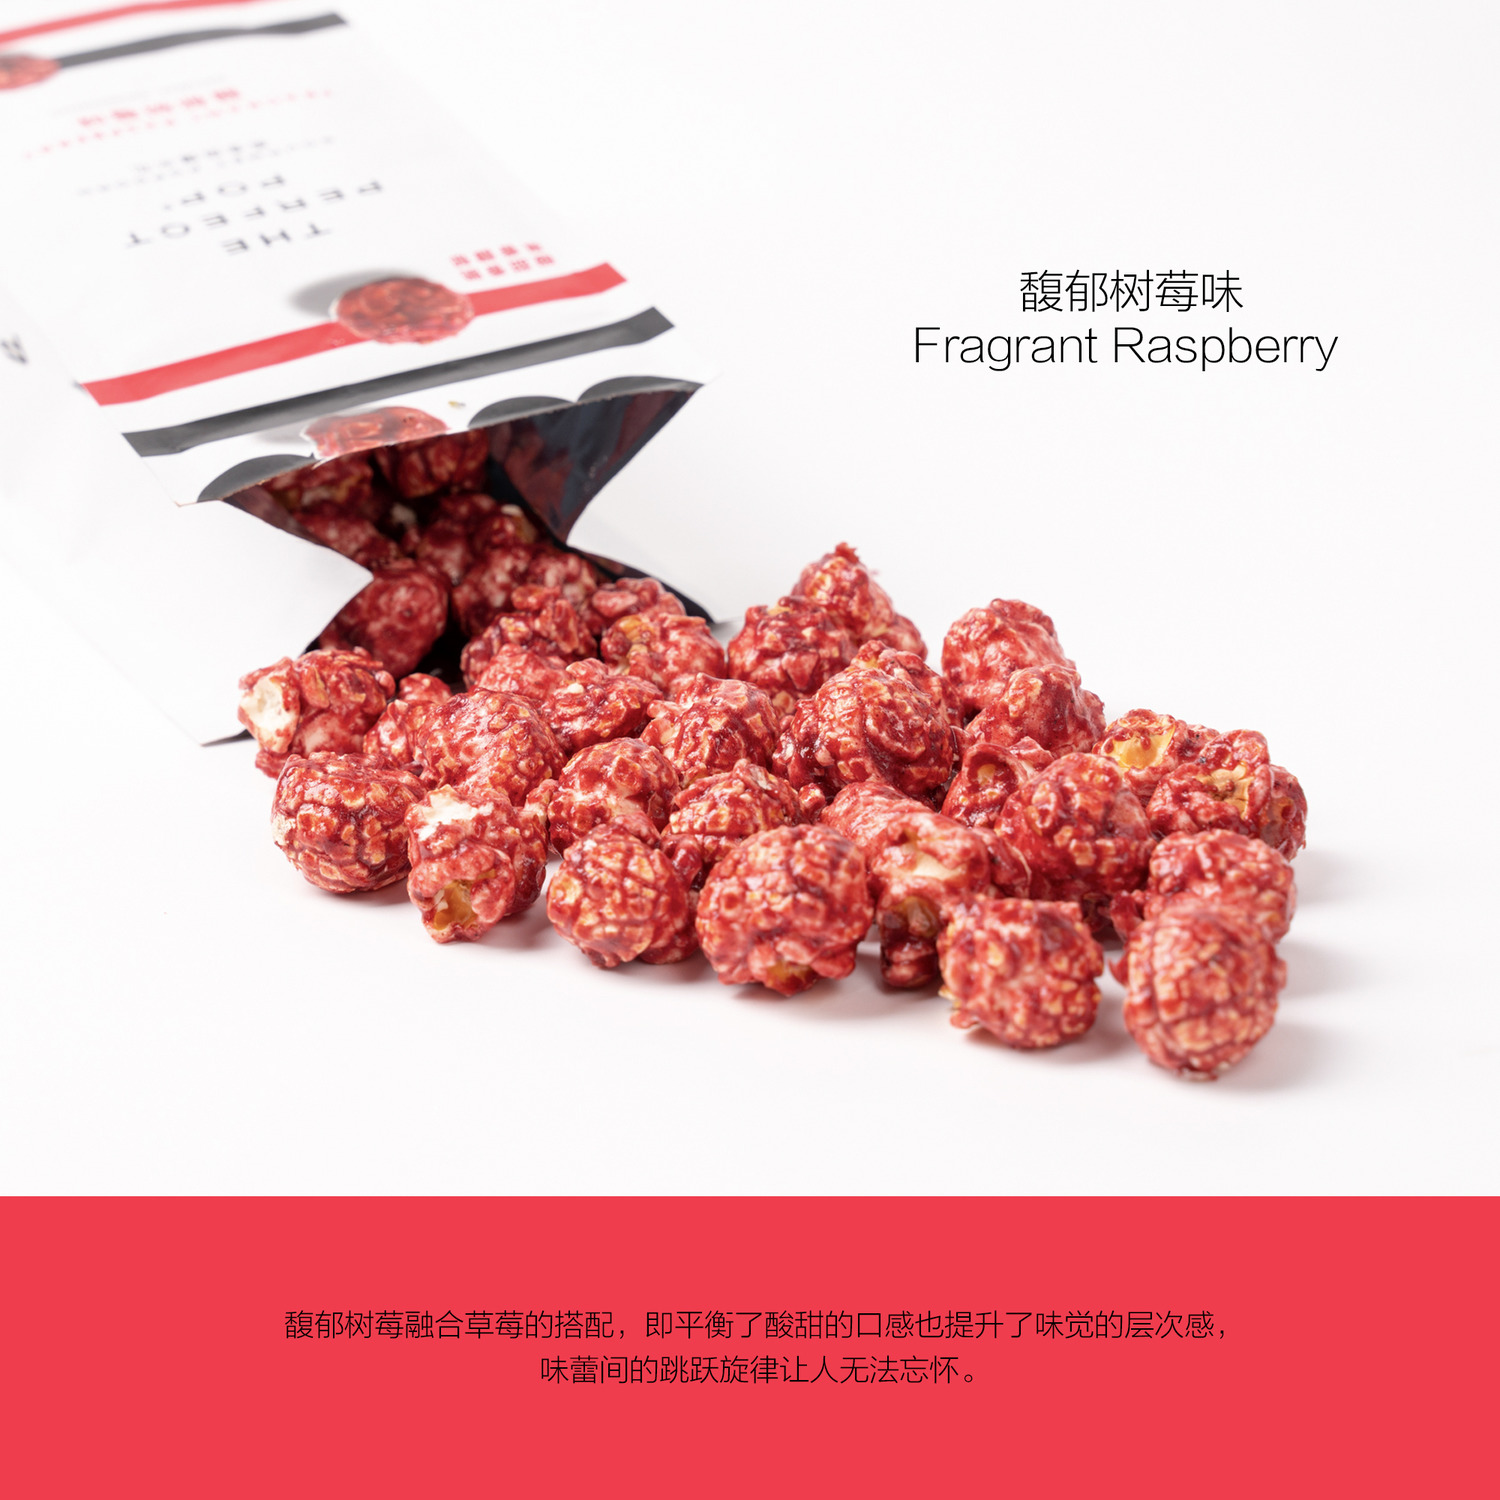 馥郁树莓味 Fragrant Raspberry-4